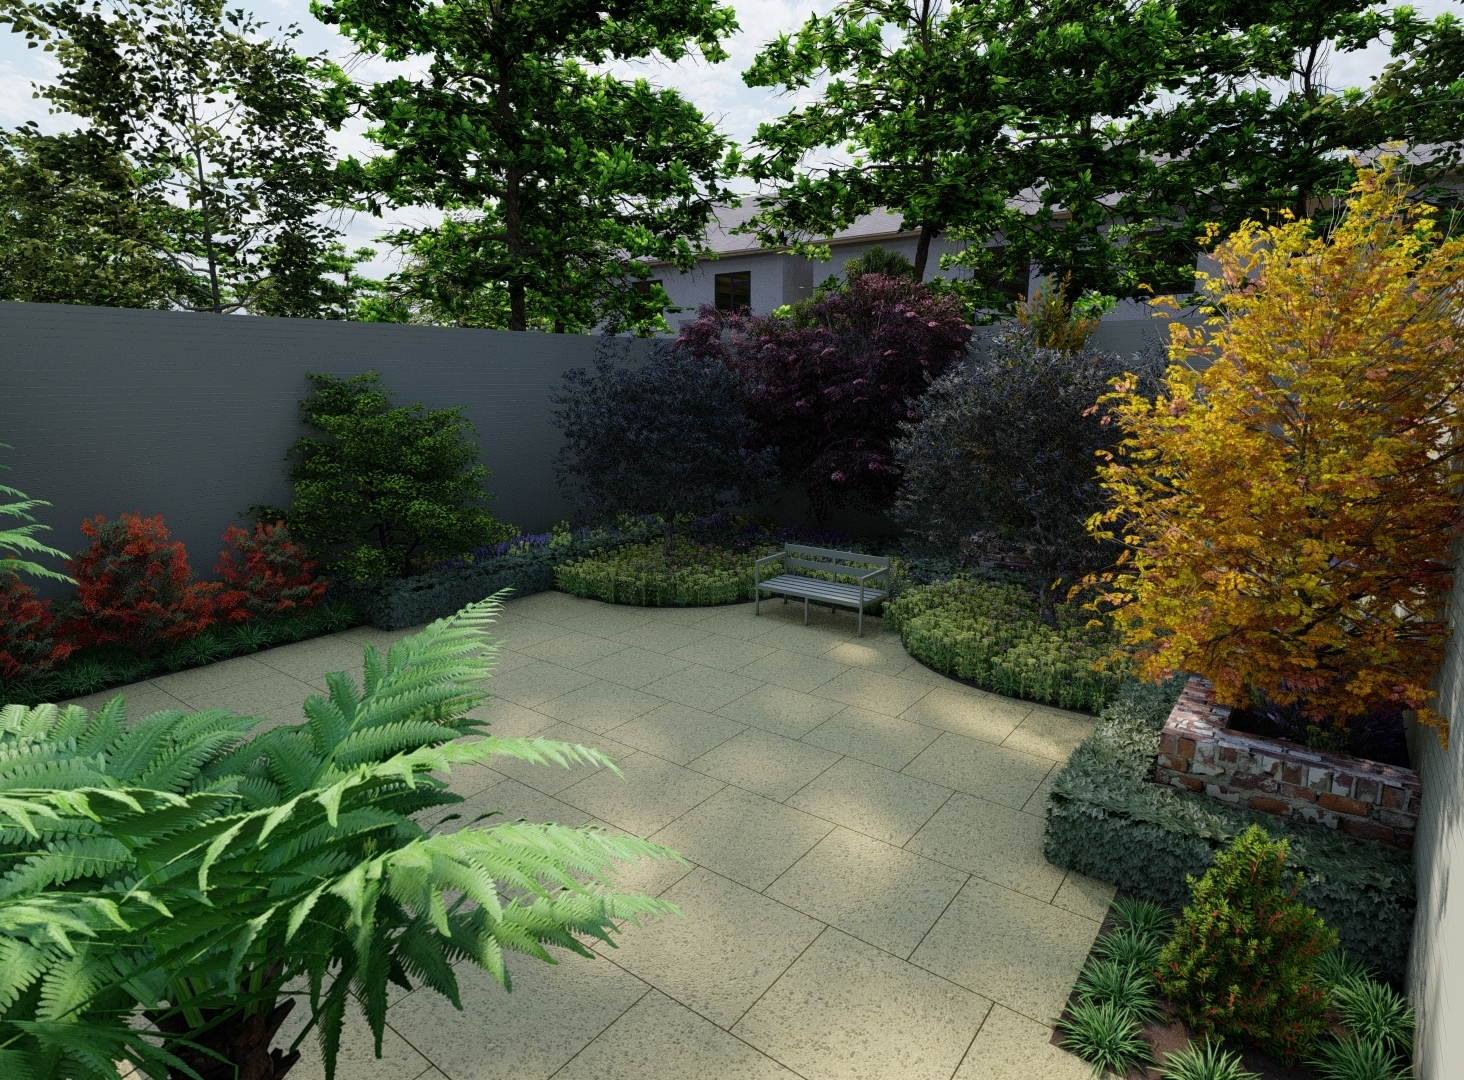 Garden Design a lush mediterranean style garden patio area in Dublin 16